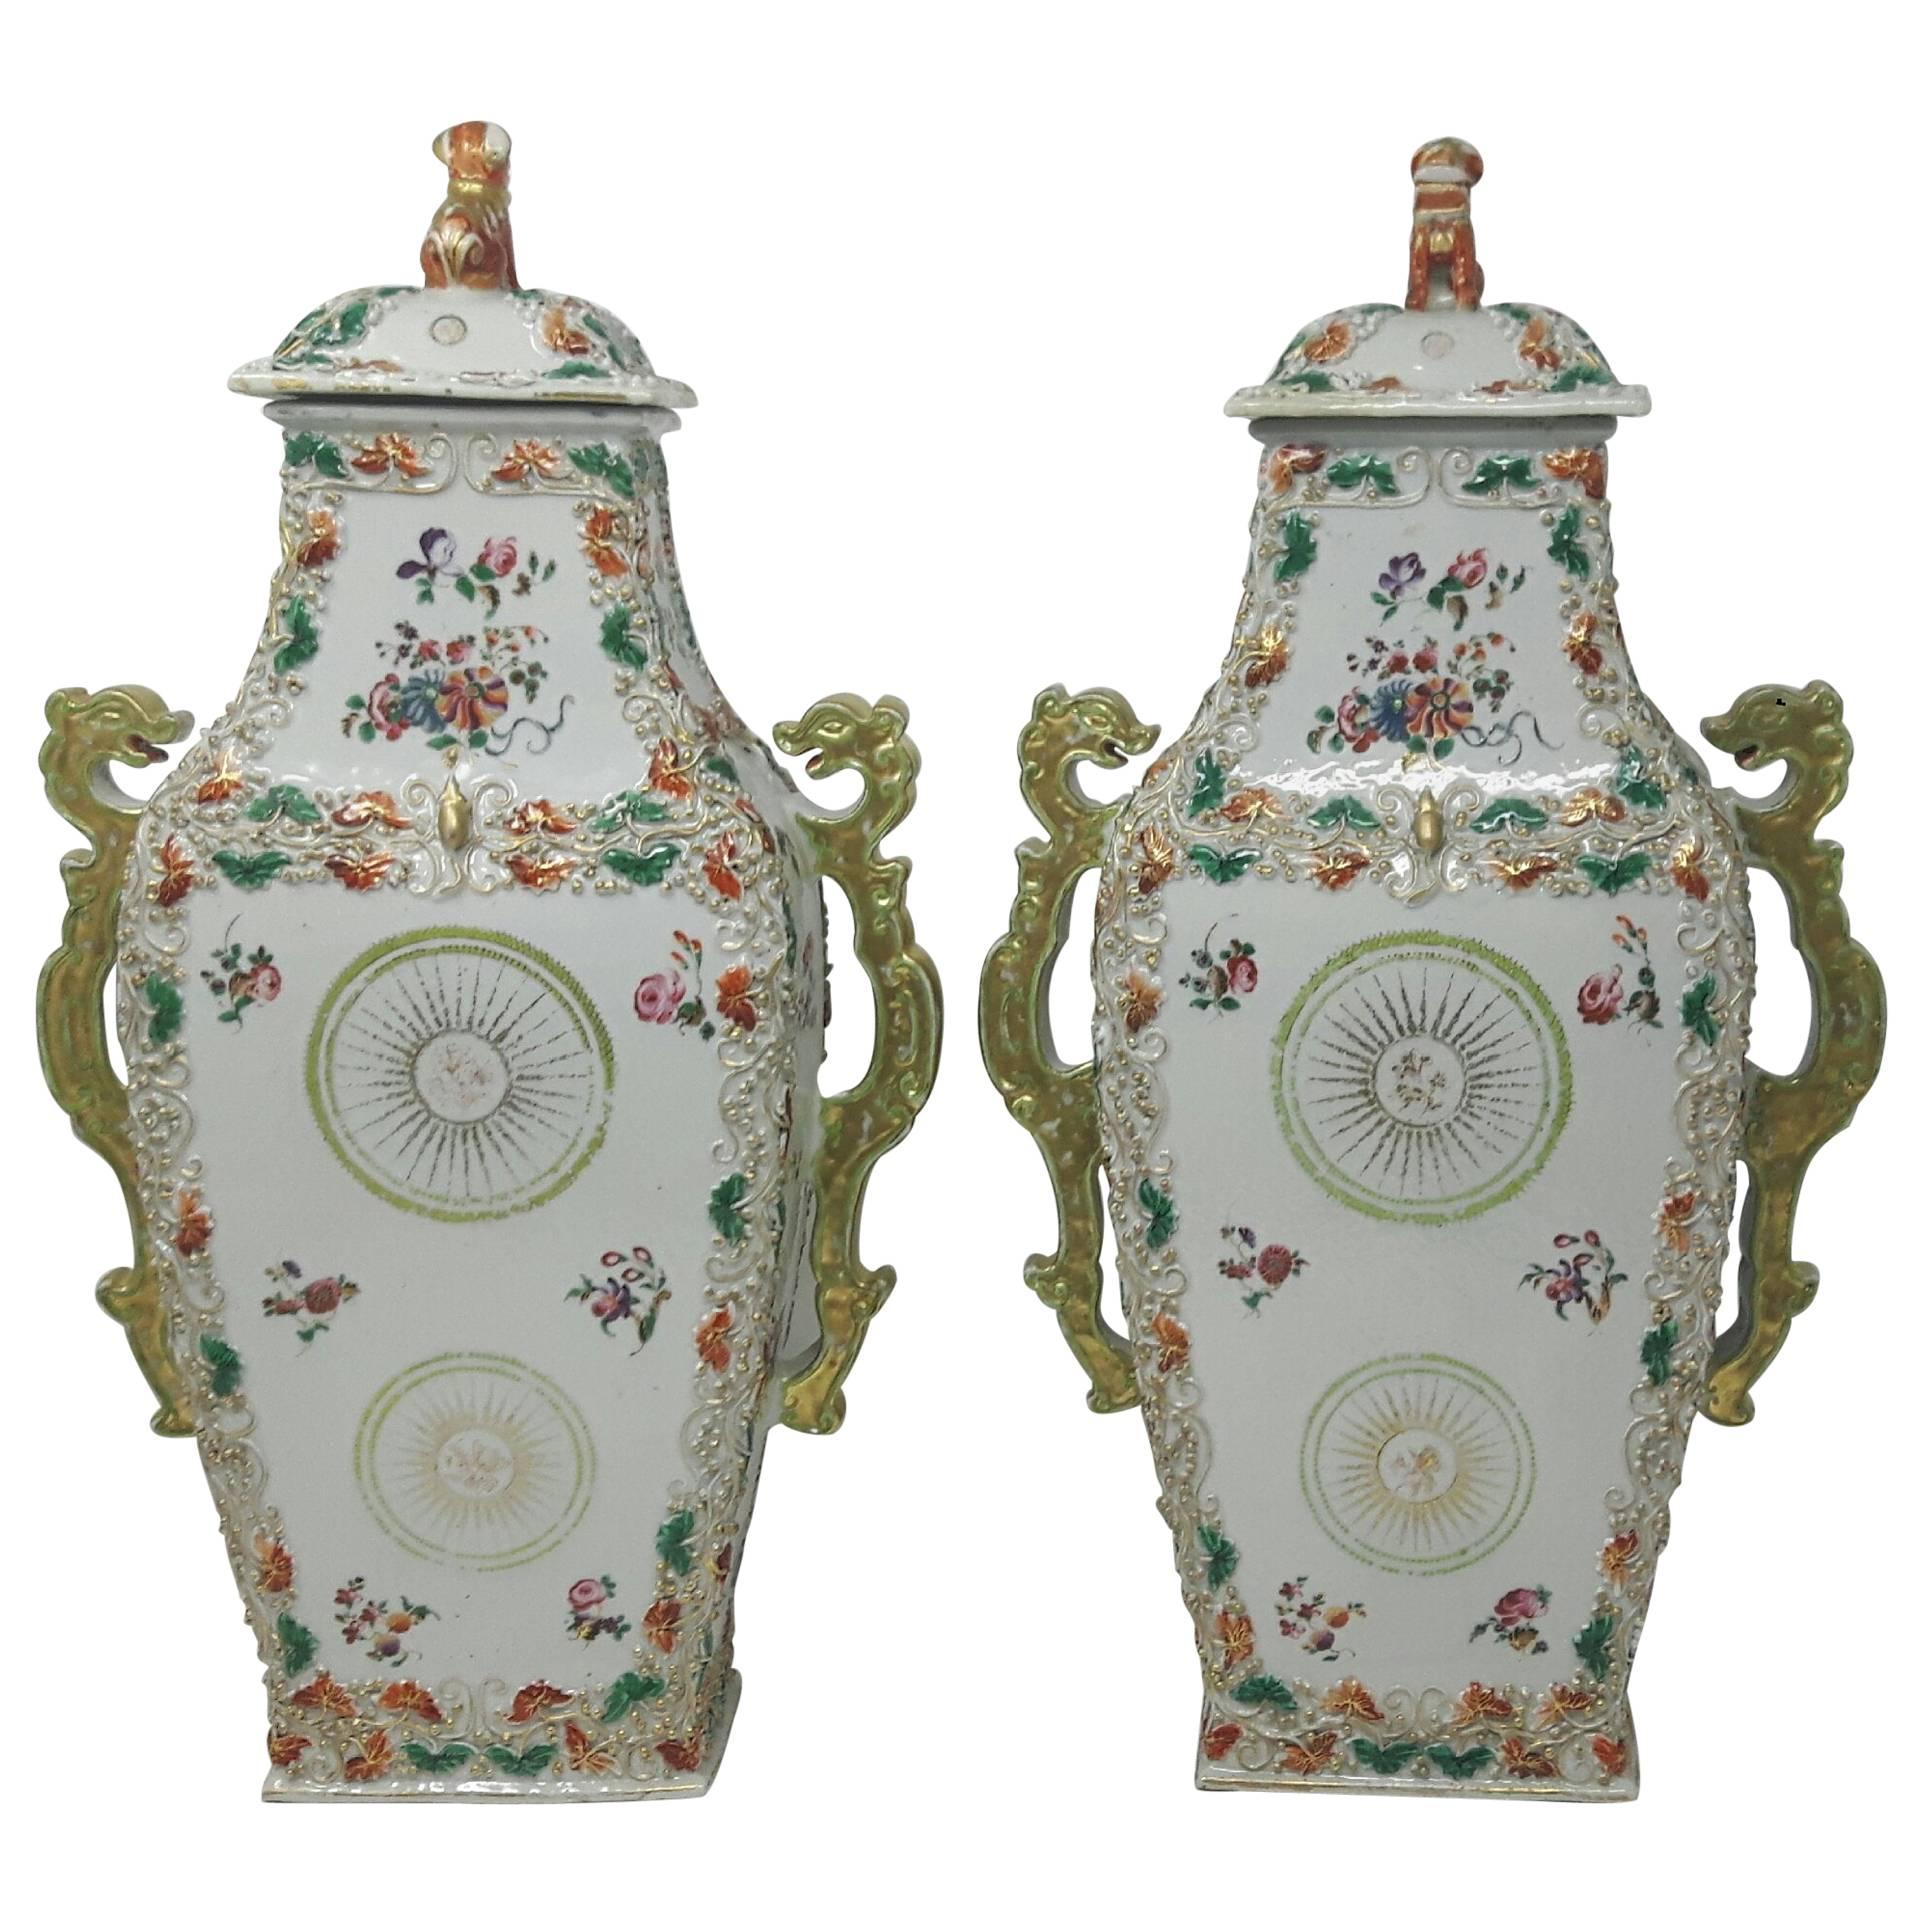 Vases d'exportation chinoise de la Famille Rose du 18e siècle, vers 1750